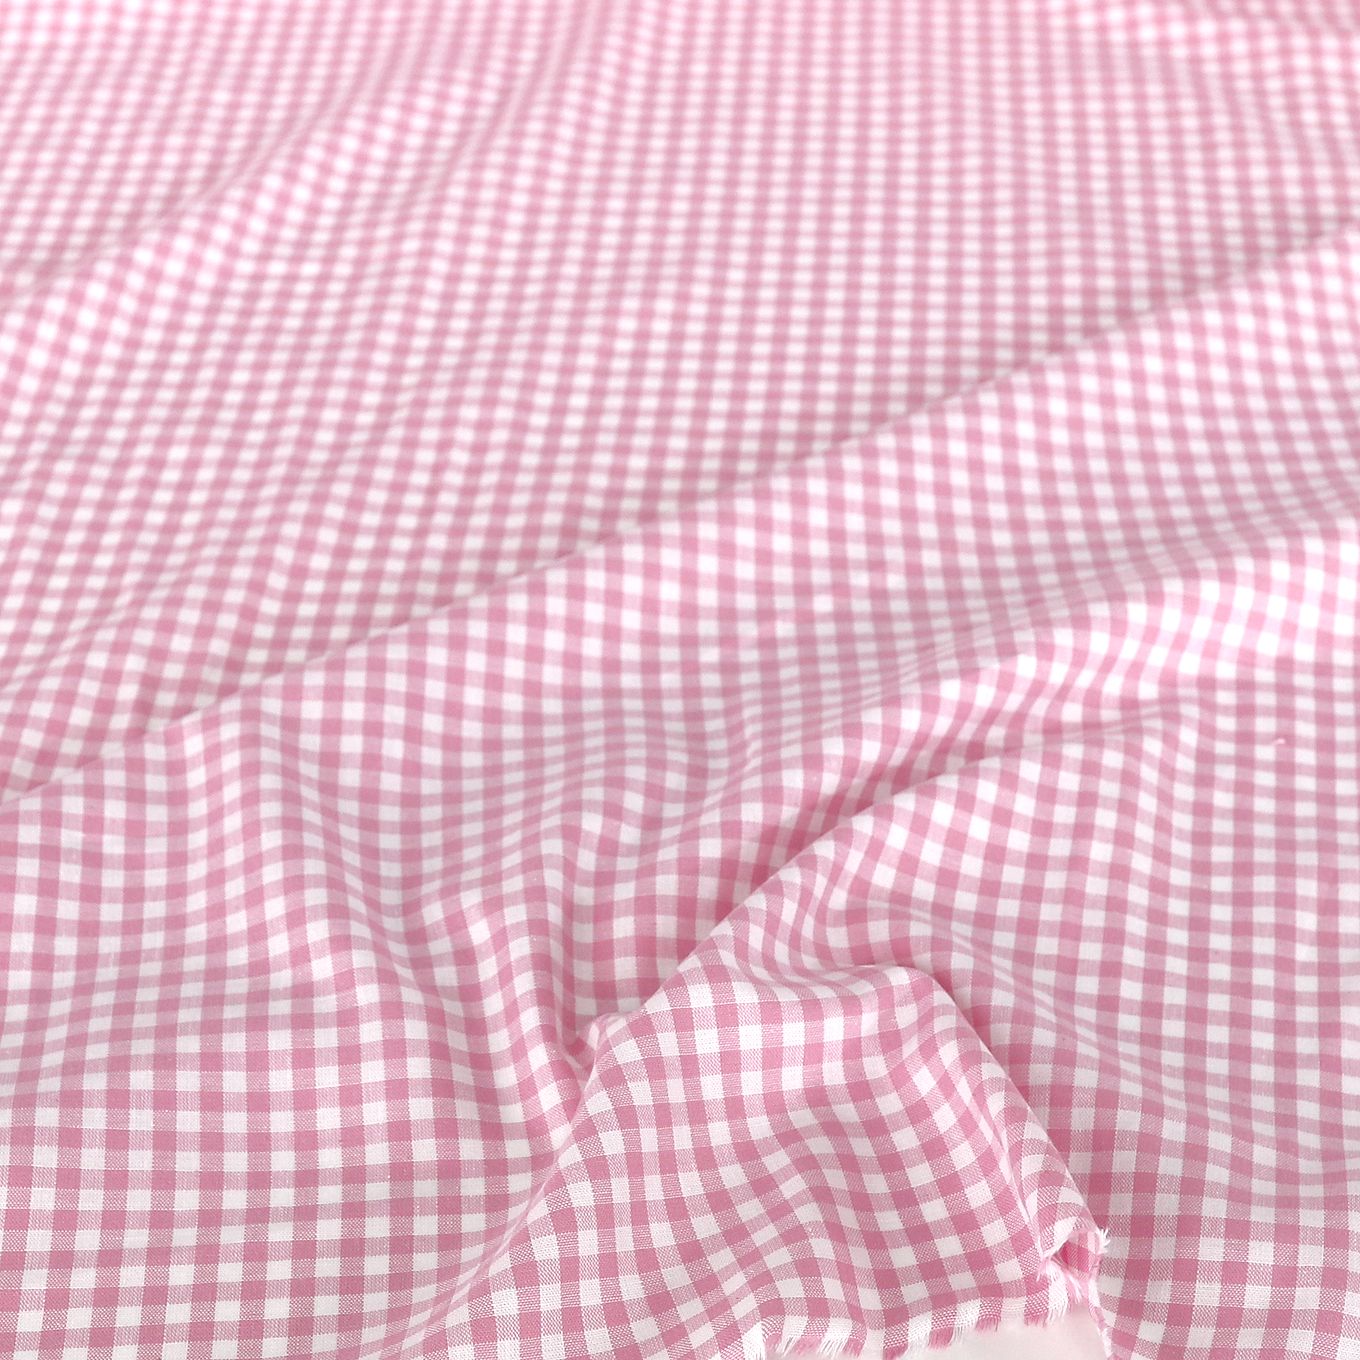 Weiche Karo Baumwollstoff Meterware für Kleid Gardine Vorhang - rosa weiß